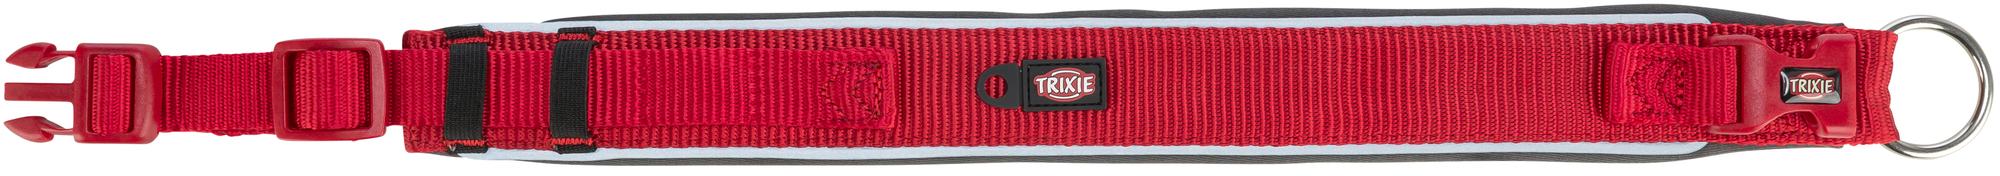 Trixie Premium coleira extra grande - Vermelho/Grafite Cinza